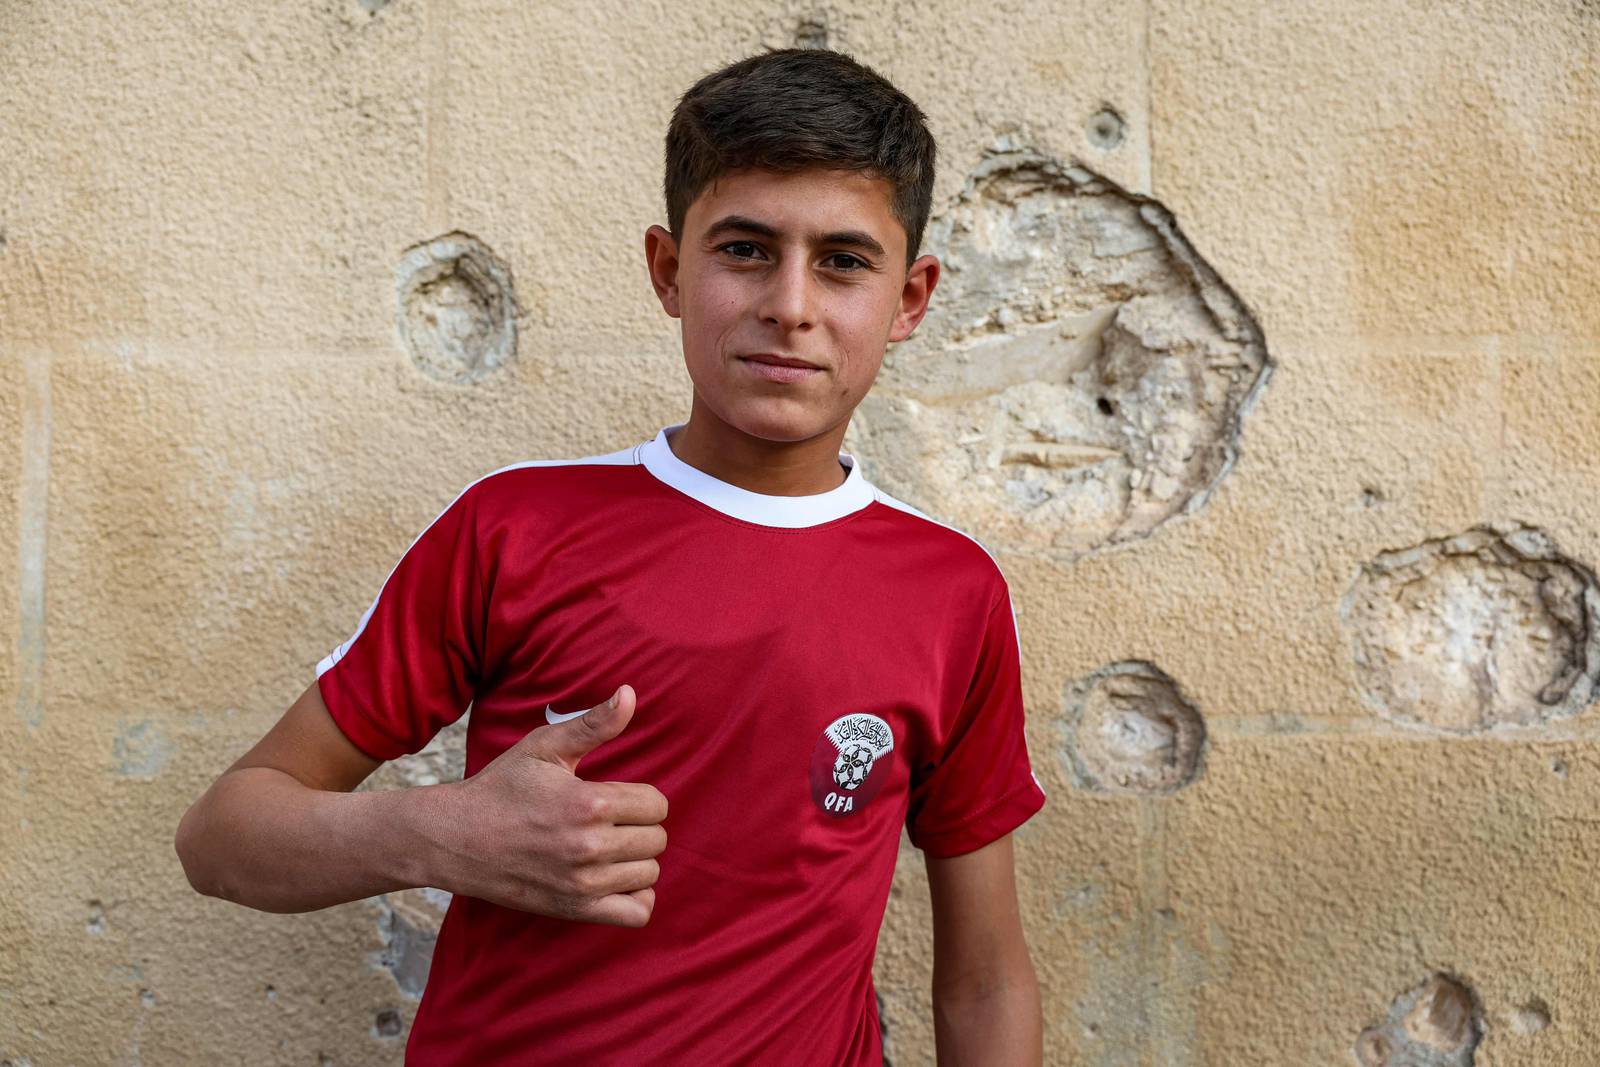 Un garçon portant un maillot du Qatar pose pour une photo à côté d'un mur criblé de balles